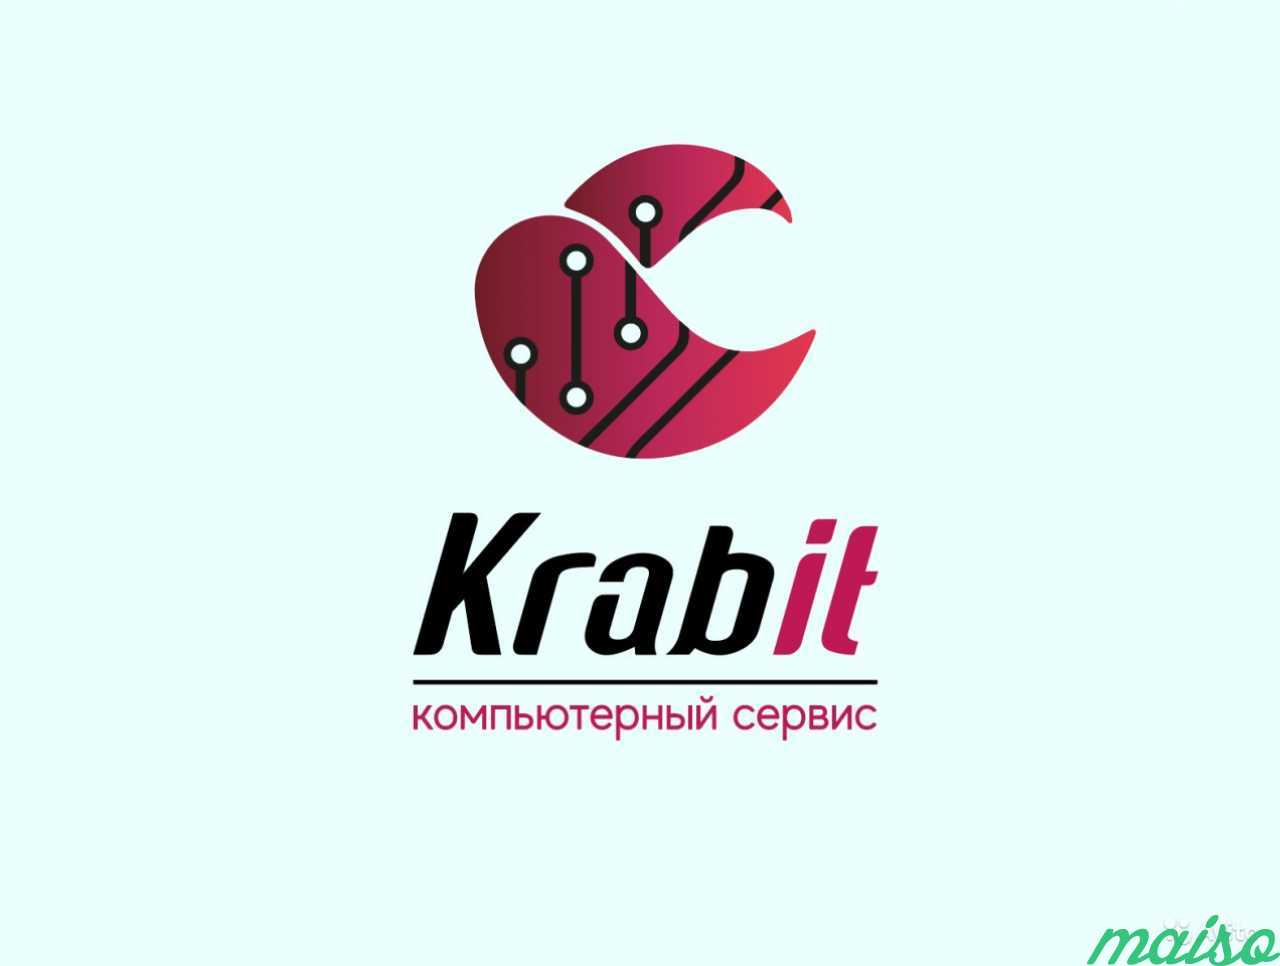 Создание логотипа, визитки, отрисовка в векторе в Санкт-Петербурге. Фото 4